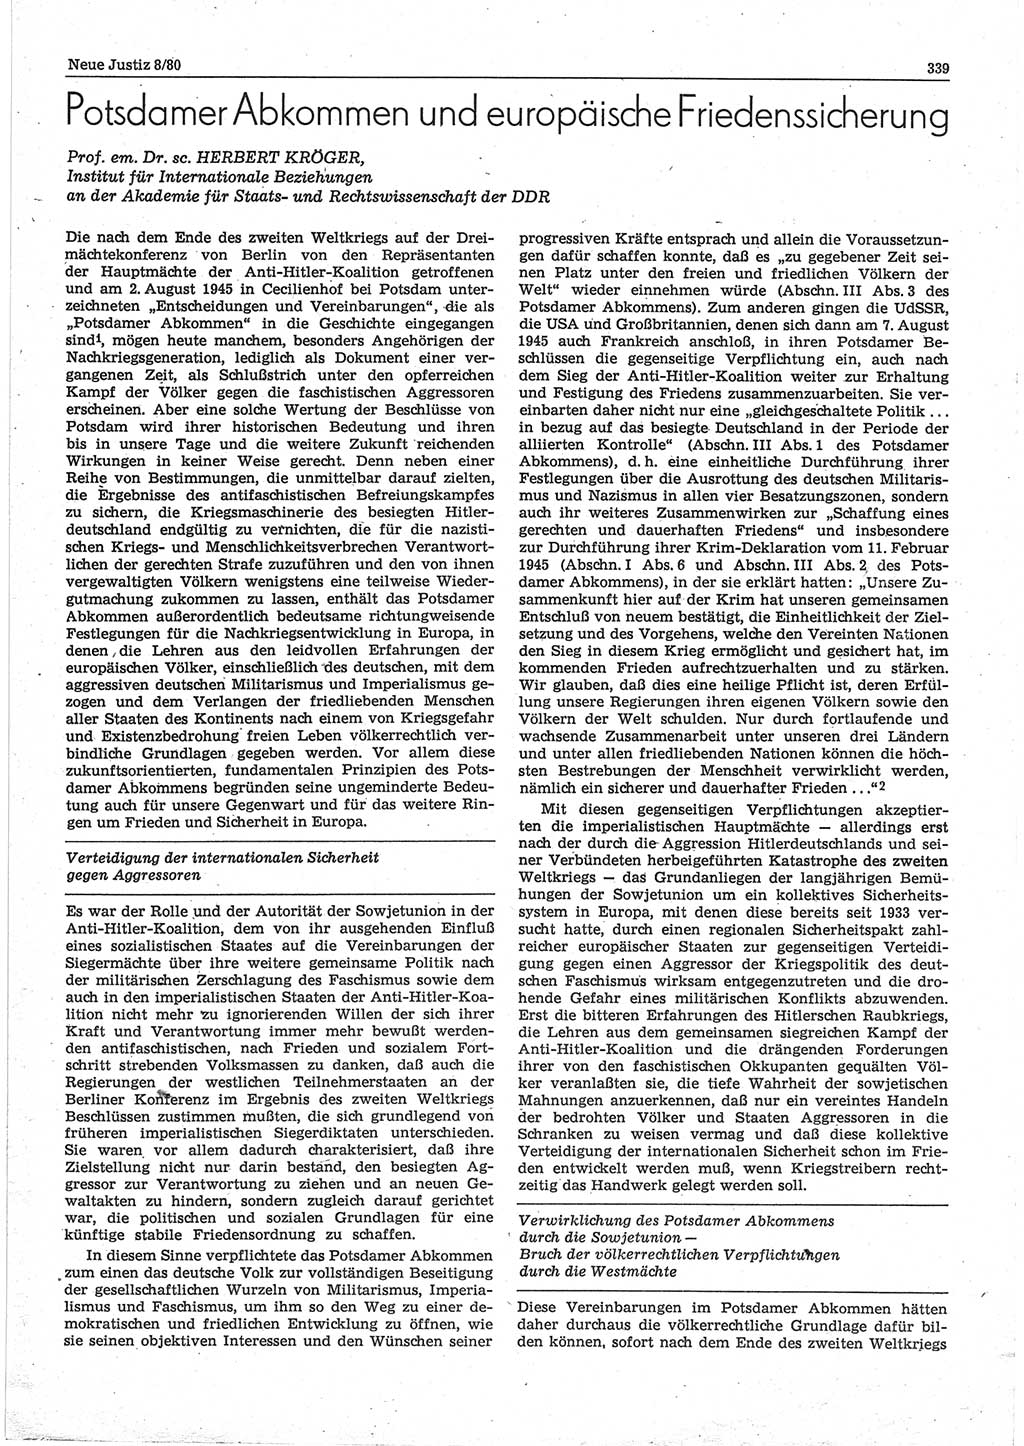 Neue Justiz (NJ), Zeitschrift für sozialistisches Recht und Gesetzlichkeit [Deutsche Demokratische Republik (DDR)], 34. Jahrgang 1980, Seite 339 (NJ DDR 1980, S. 339)